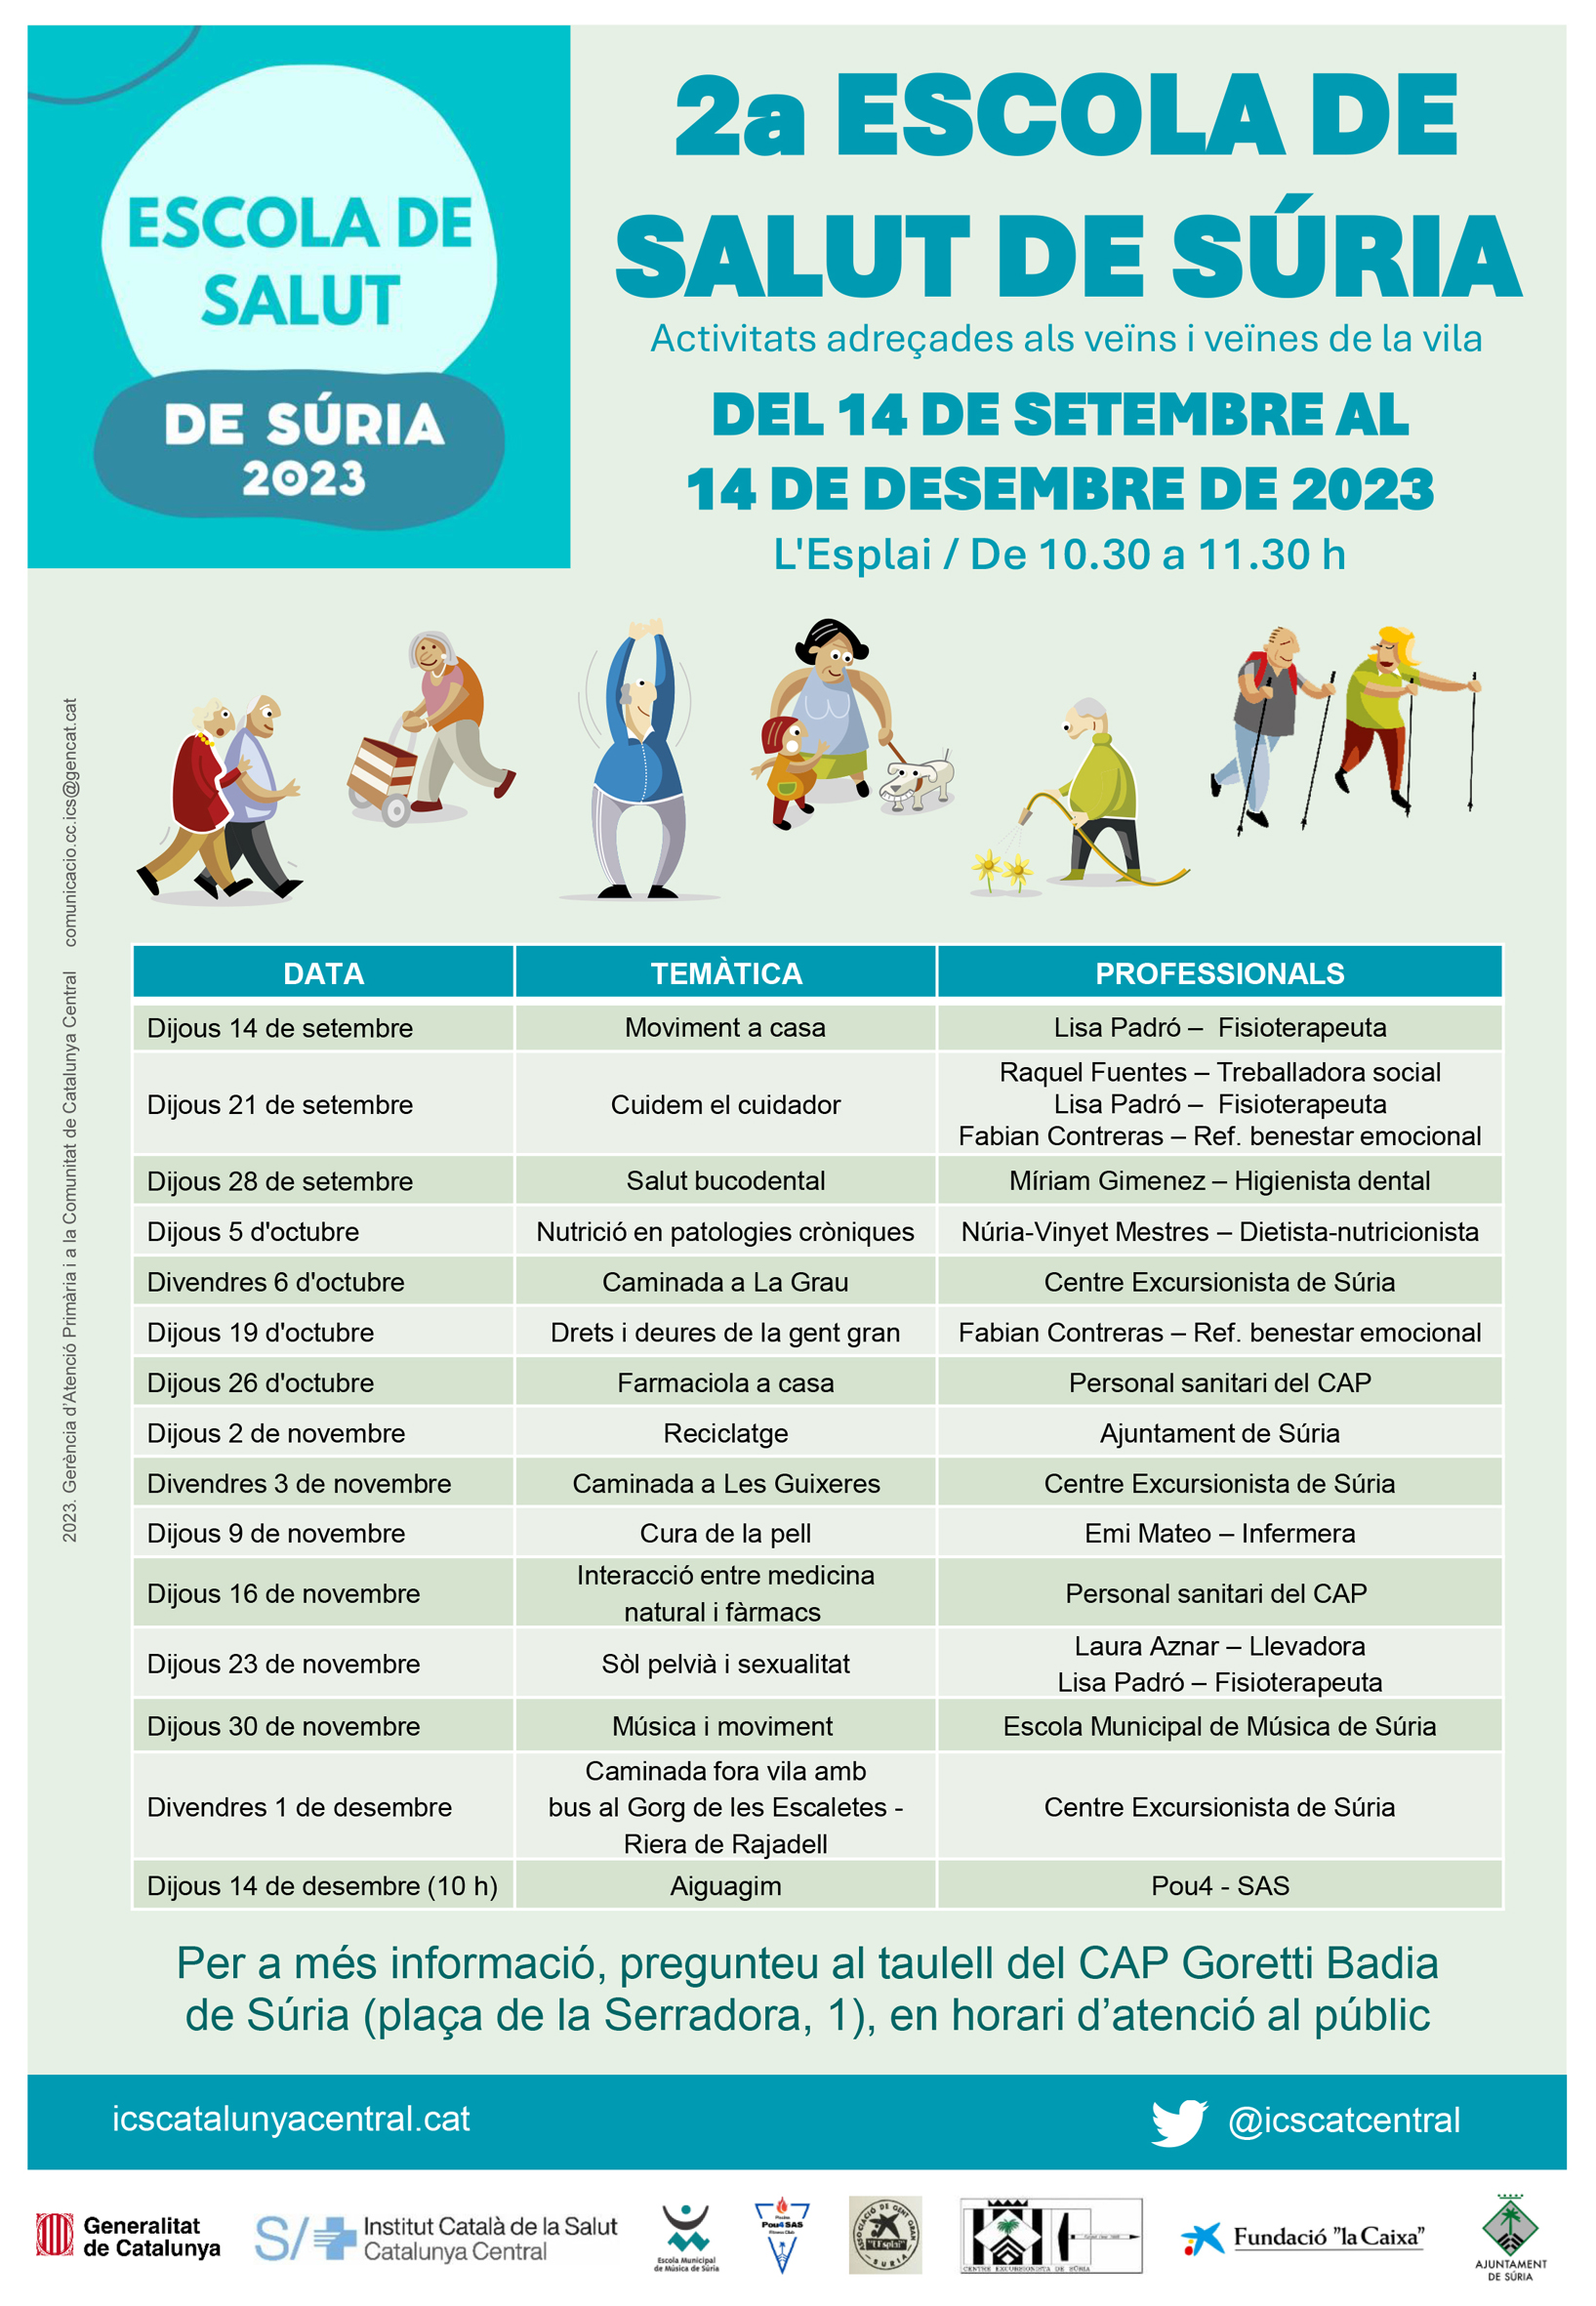 Cartell de la 2a Escola de Salut de Súria - Del 14 de setembre al 14 de desembre.